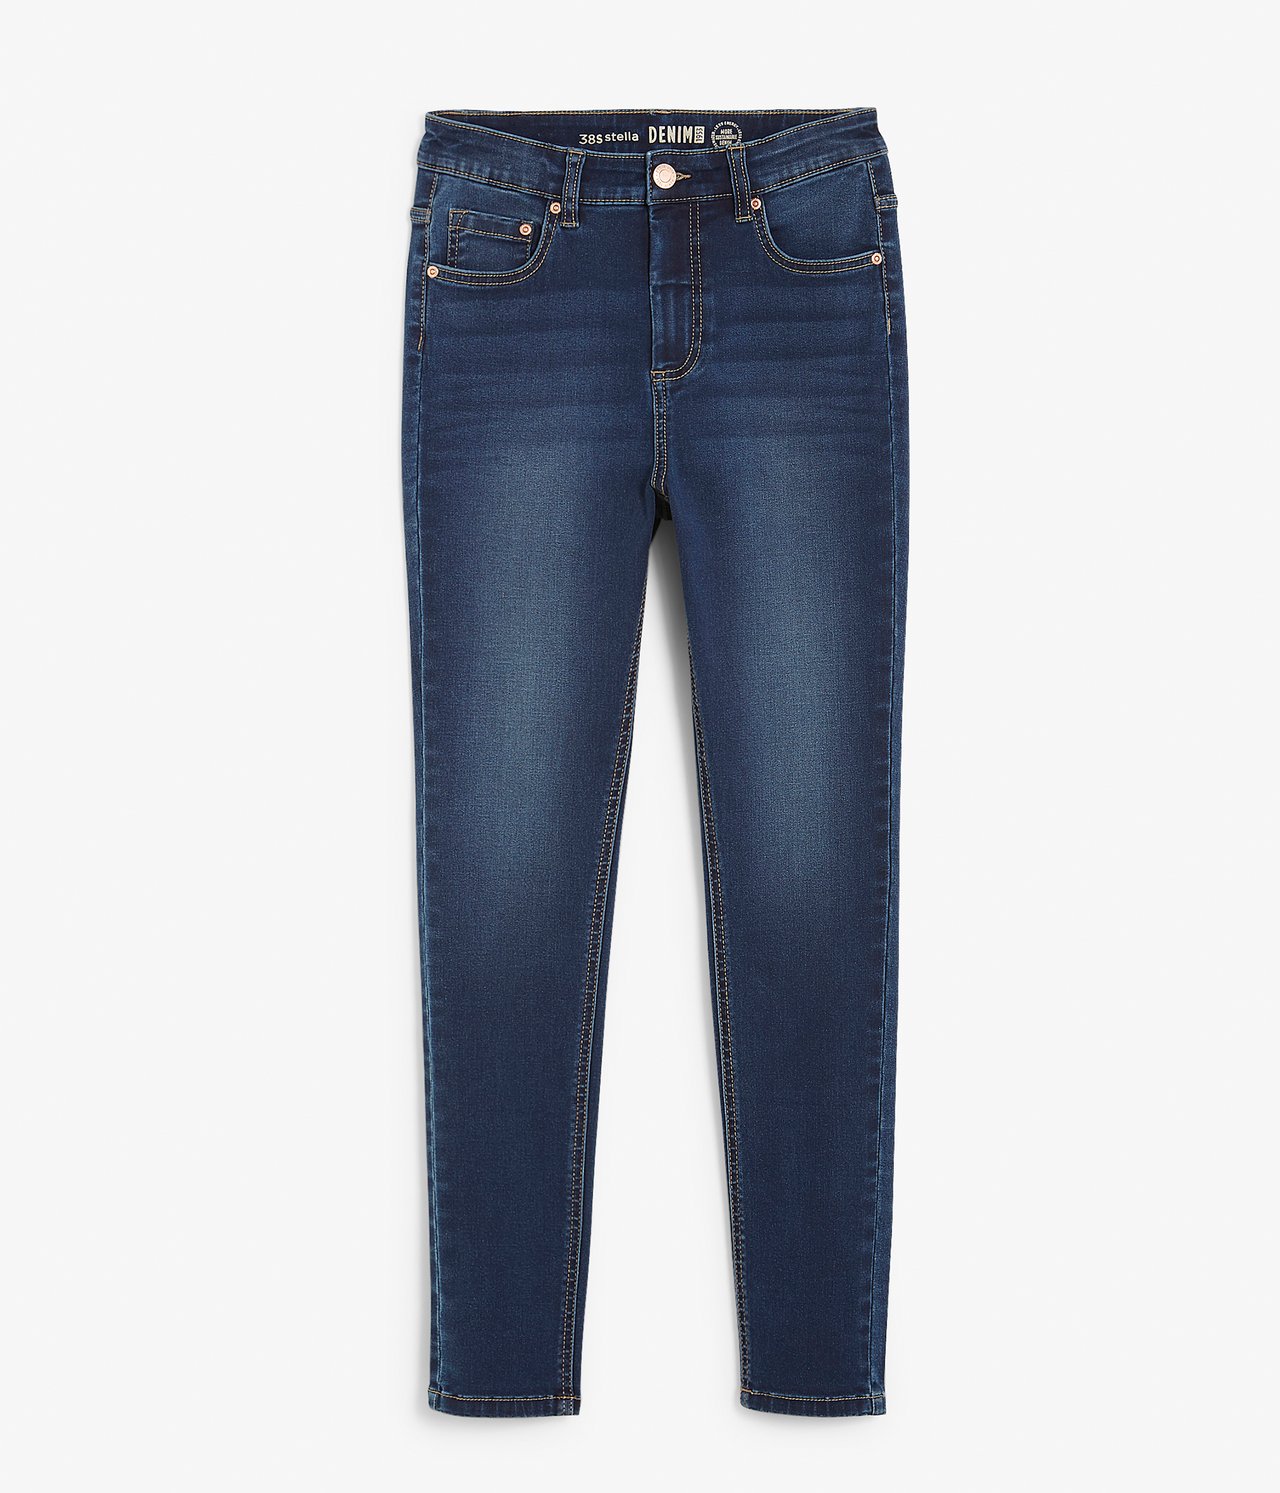 Super slim jeans short leg - Tumma denimi - 5